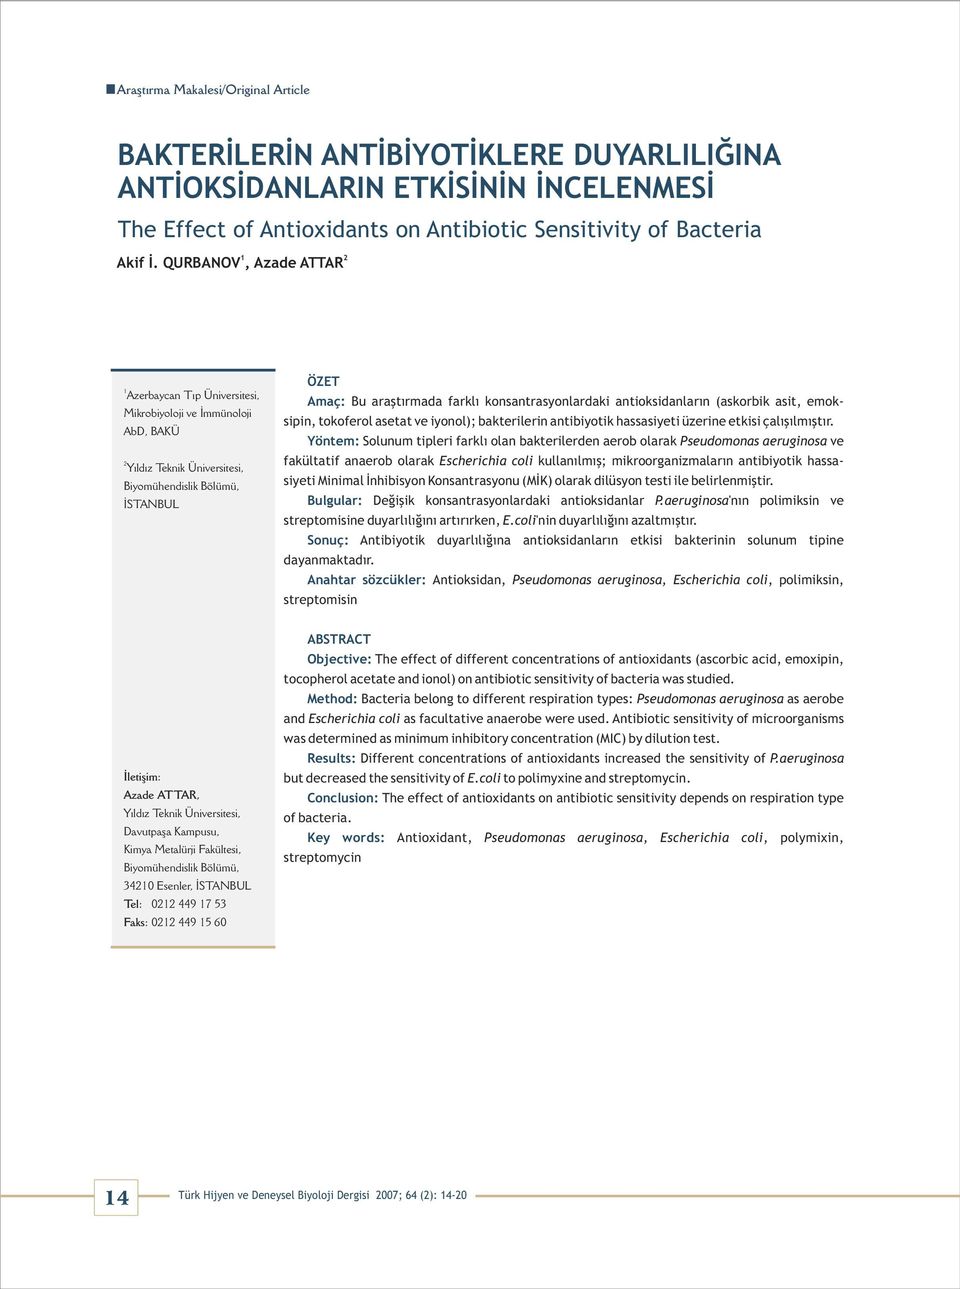 konsantrasyonlardaki antioksidanların (askorbik asit, emoksipin, tokoferol asetat ve iyonol); bakterilerin antibiyotik hassasiyeti üzerine etkisi çalışılmıştır.